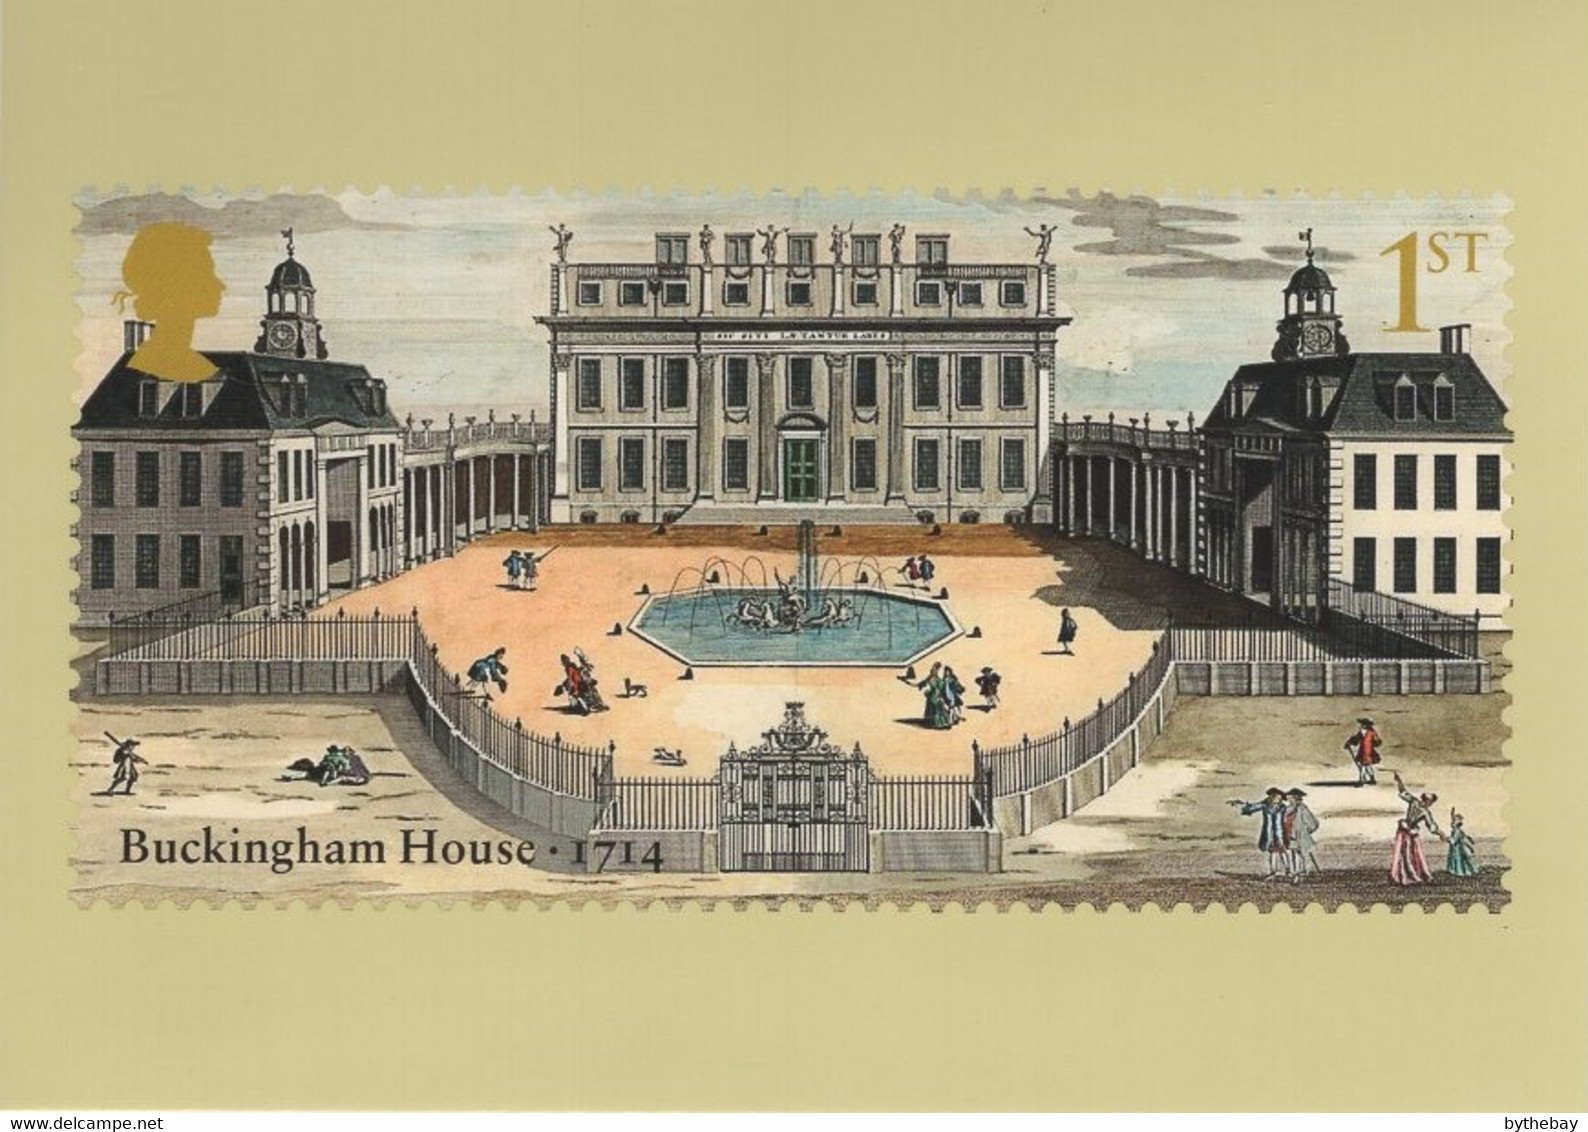 Great Britain 2014 PHQ Card Sc 3283 1st Buckingham House 1714 - Cartes PHQ